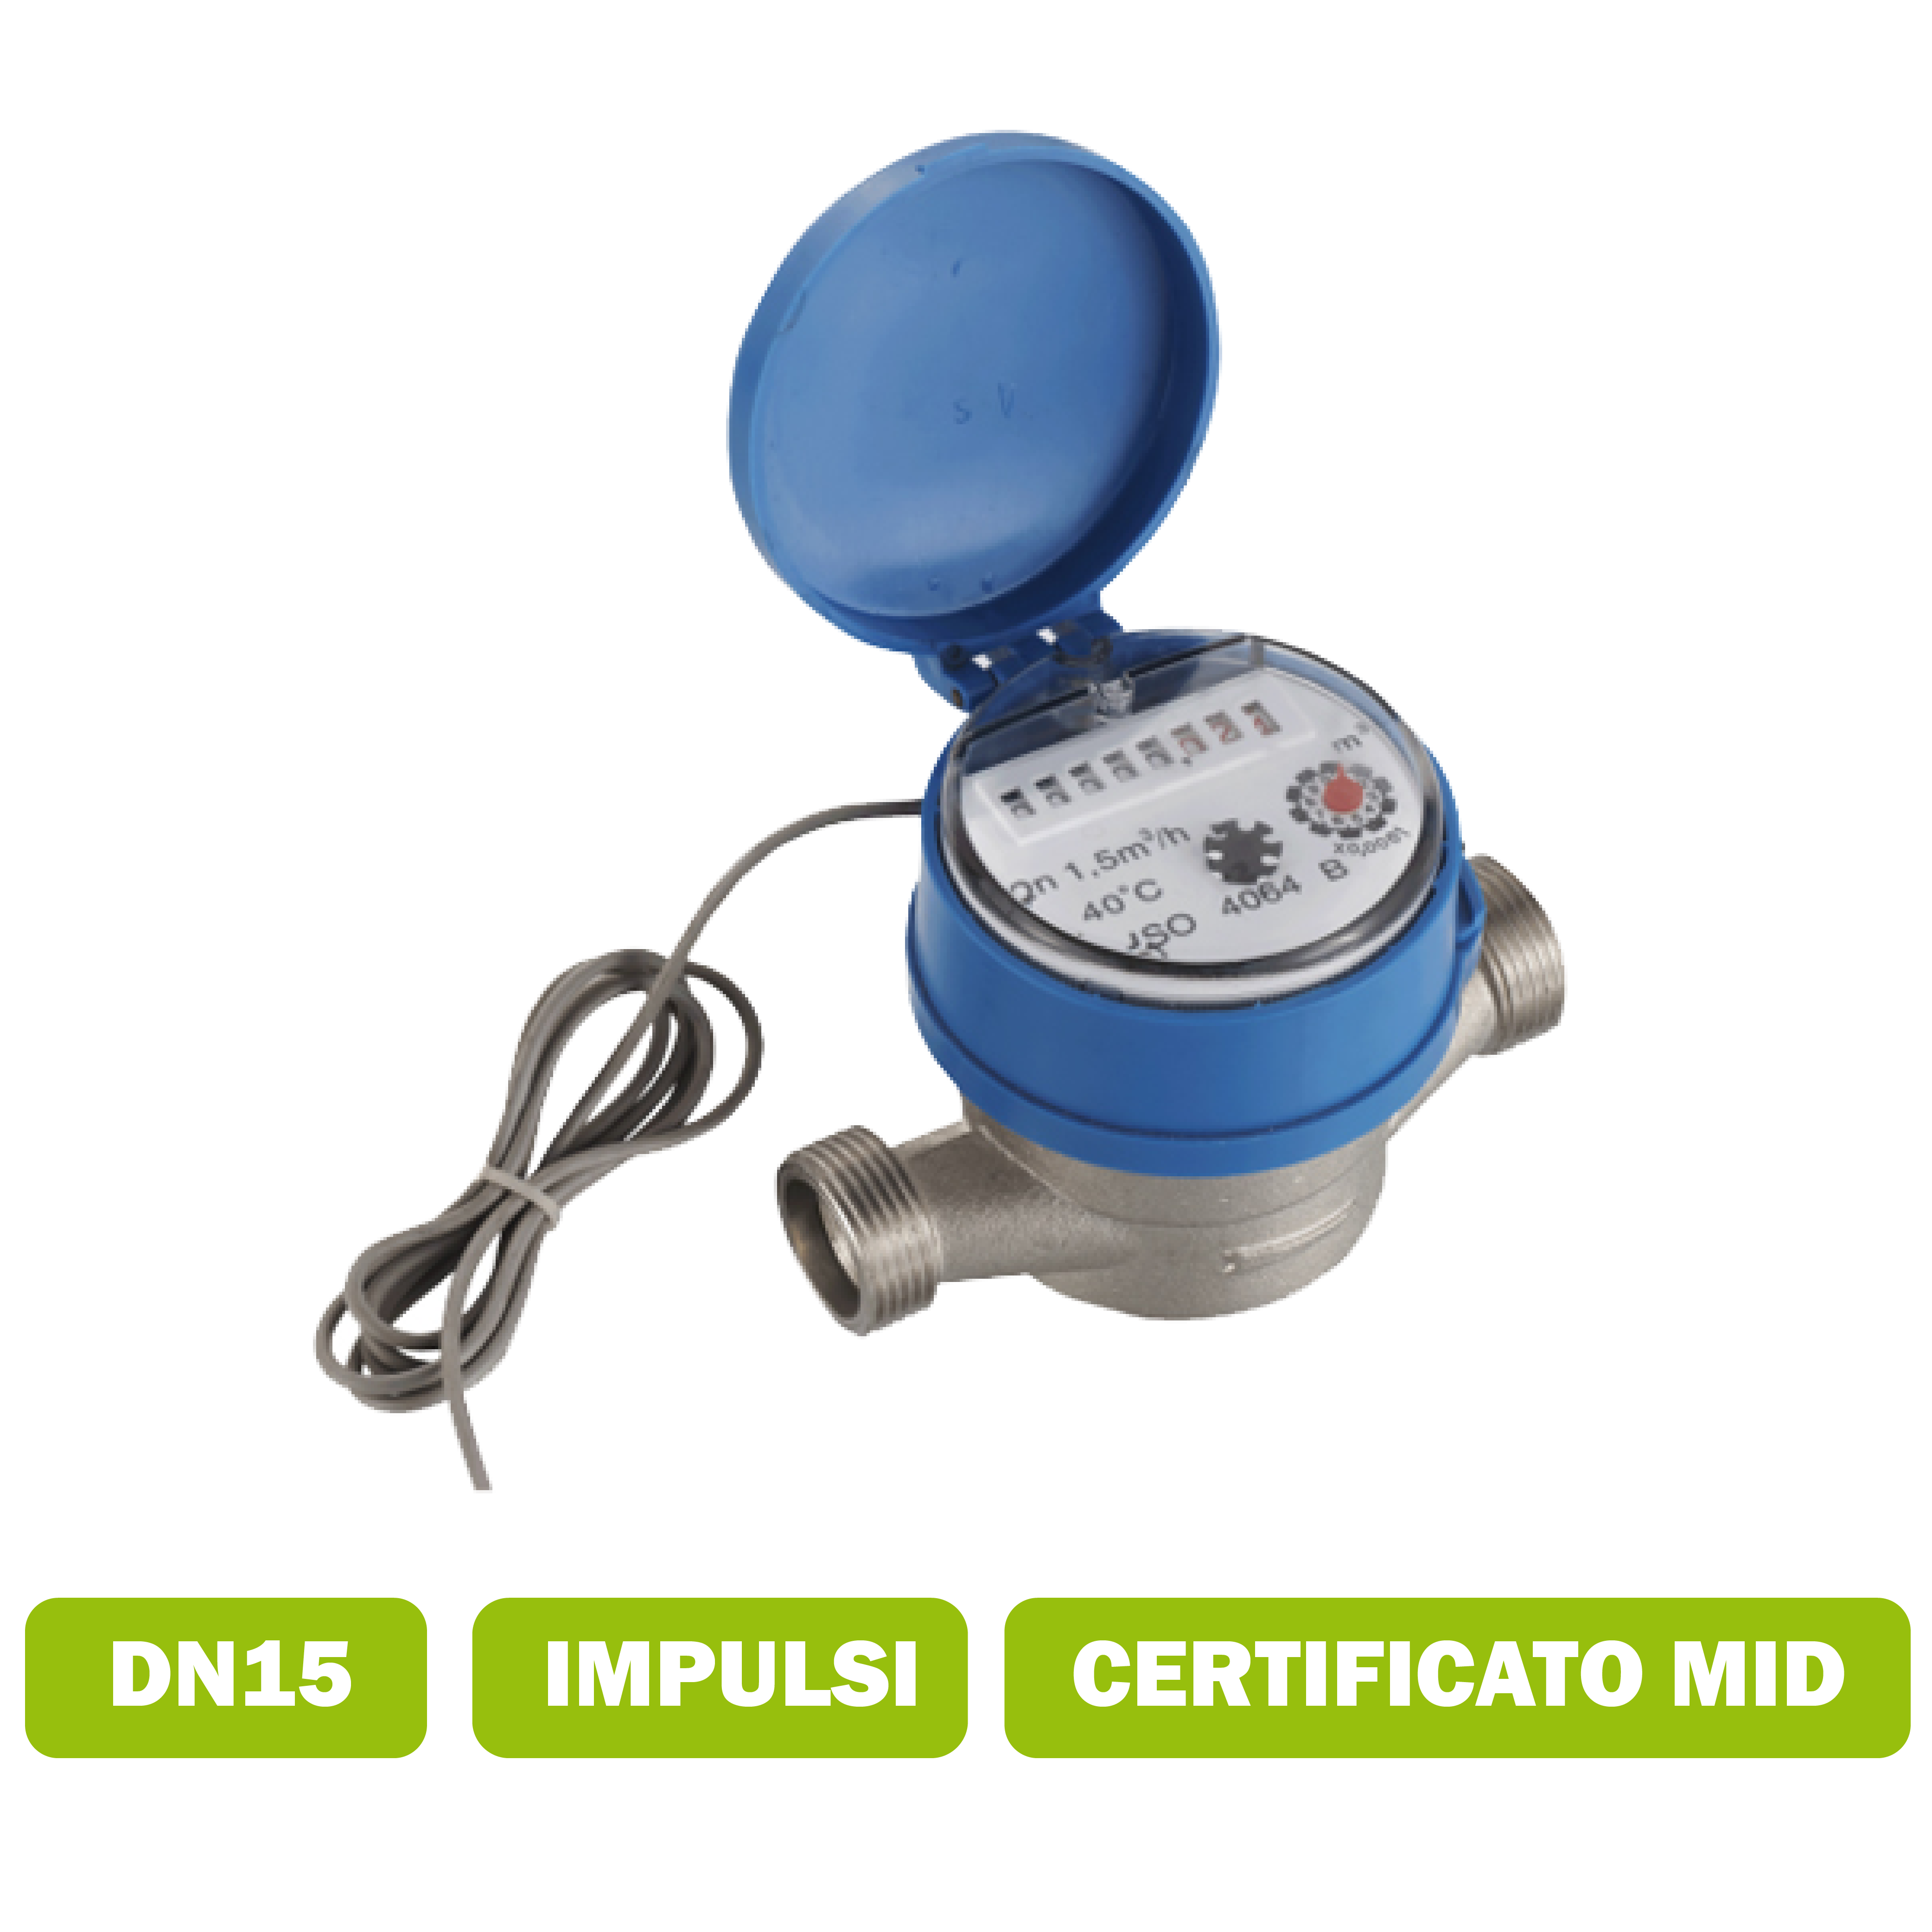 Water meter per acqua fredda (50°C) getto singolo DN15 portata media 2.5 m3/h con interfaccia impulsi certificato MID